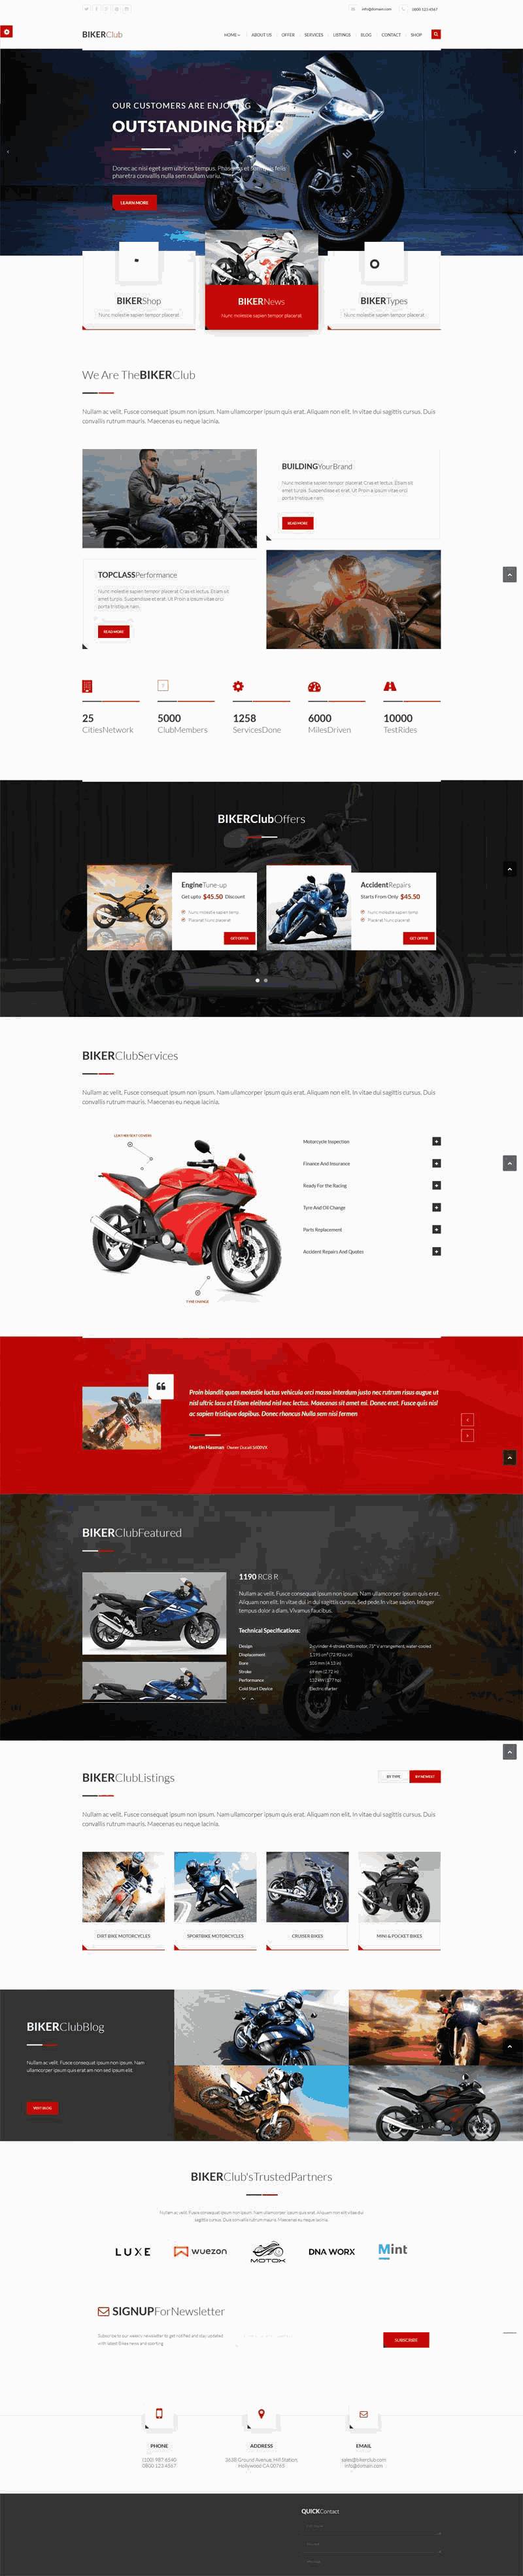 摩托车网上专卖店网站Wordpress模板（带手机版）效果图